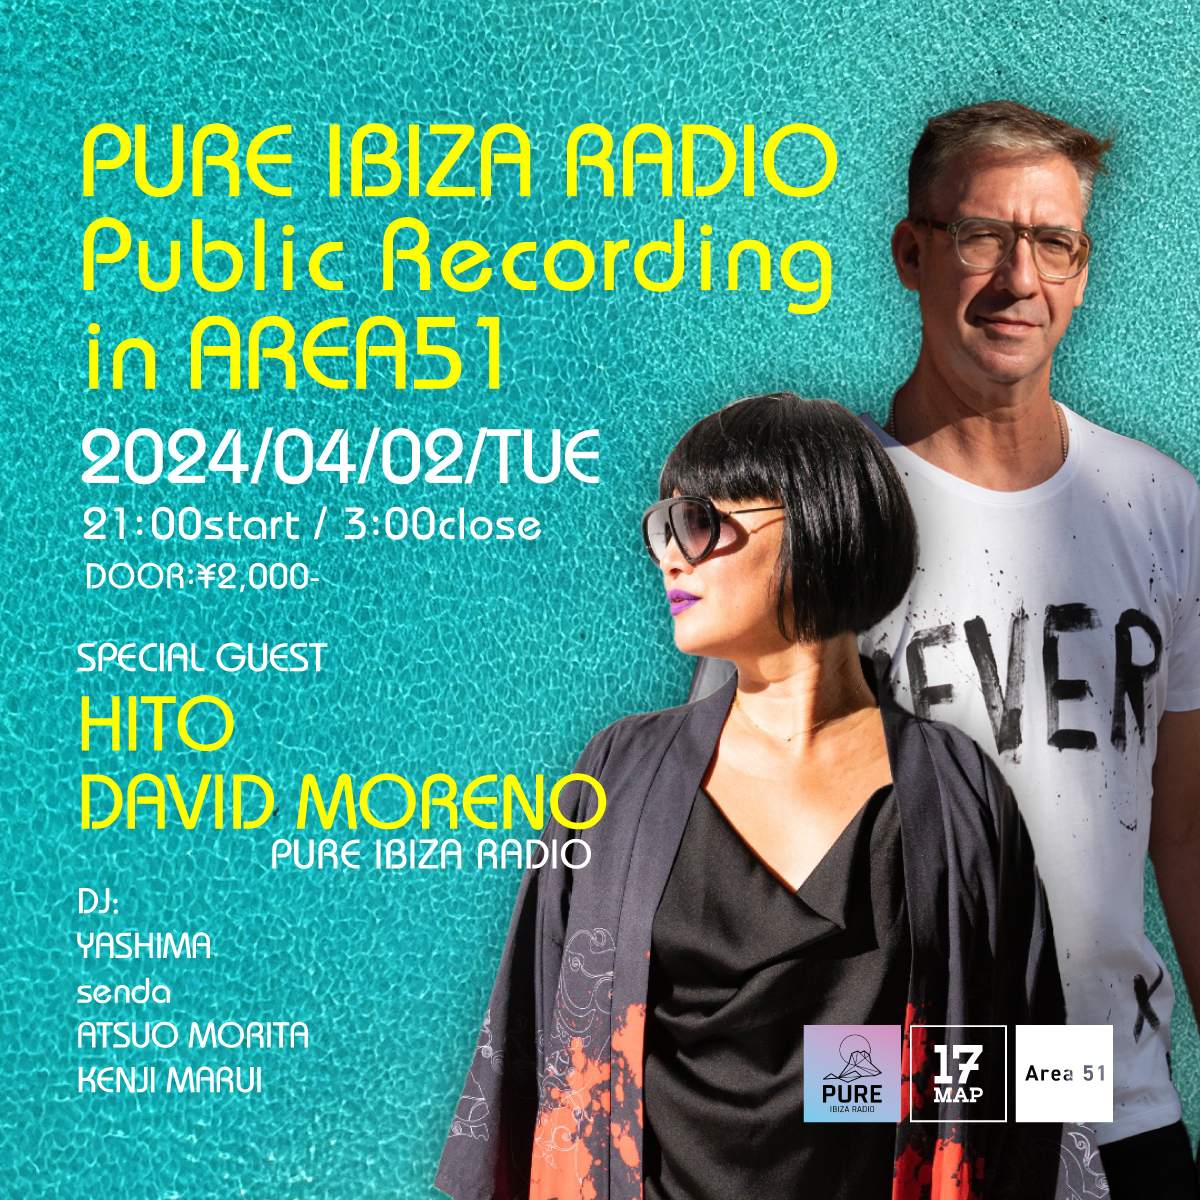 PURE IBIZA RADIO Public Recording in AREA51 - Página frontal